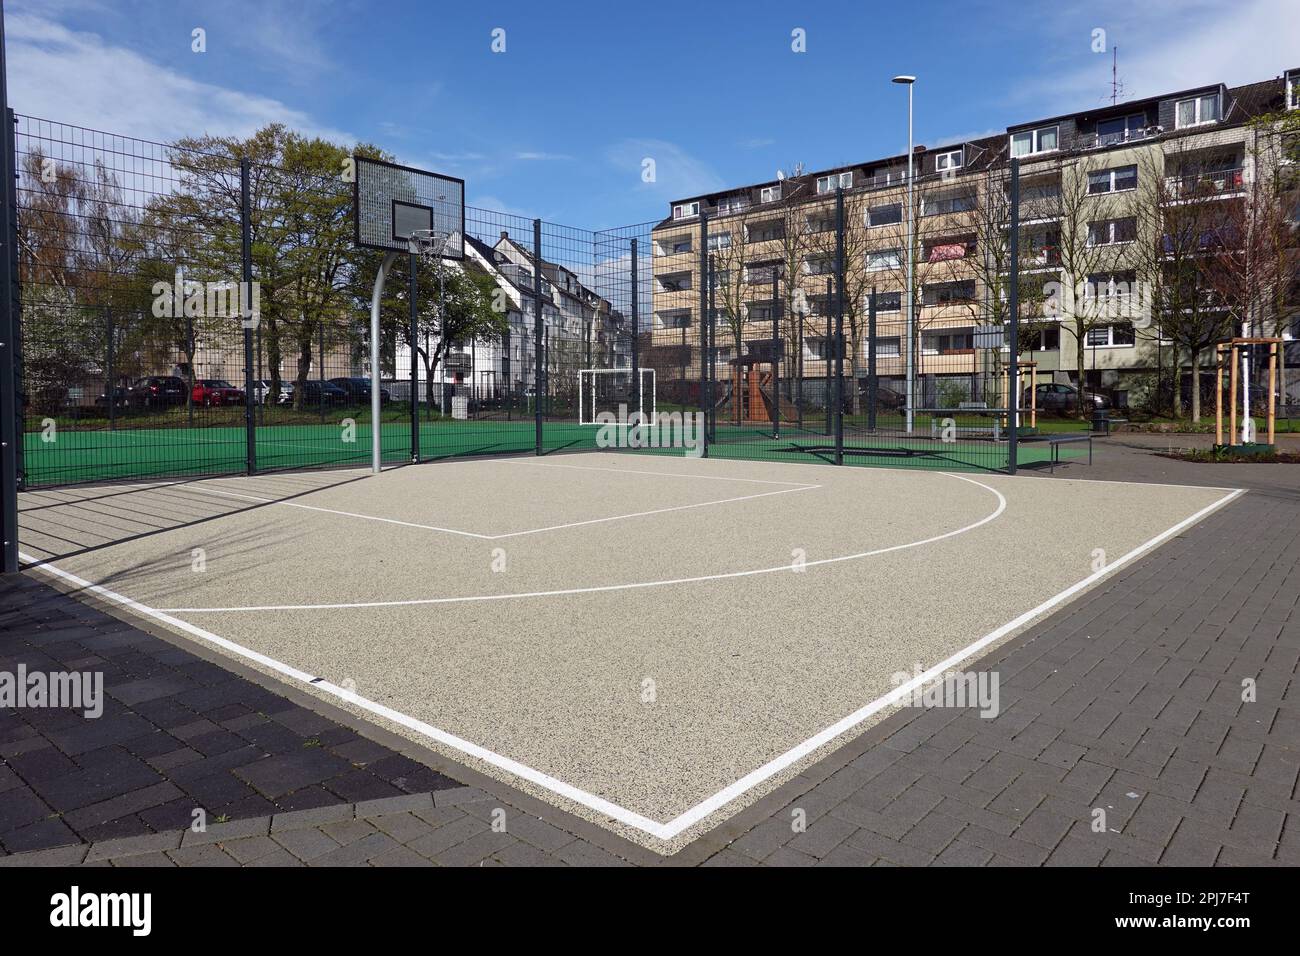 Spiel- und Sportplatz in einem Wohnviertel von Buchheim, Nordrhein-Westfalen, Deutschland, Köln Stock Photo